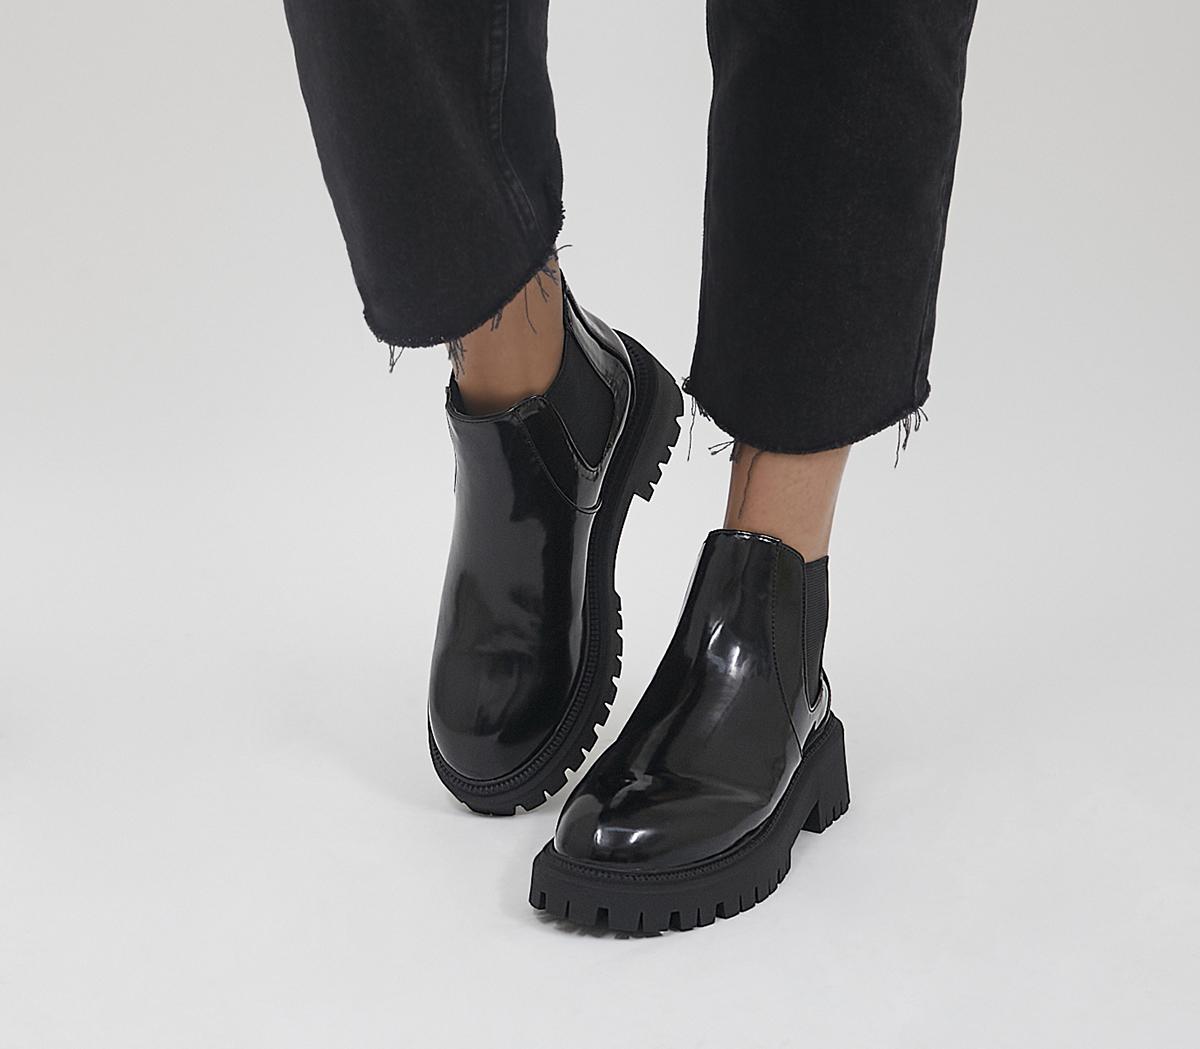 Nautisk bodsøvelser Joseph Banks OFFICE Alexa Low Cut Chelsea Boots Black - Women's Ankle Boots